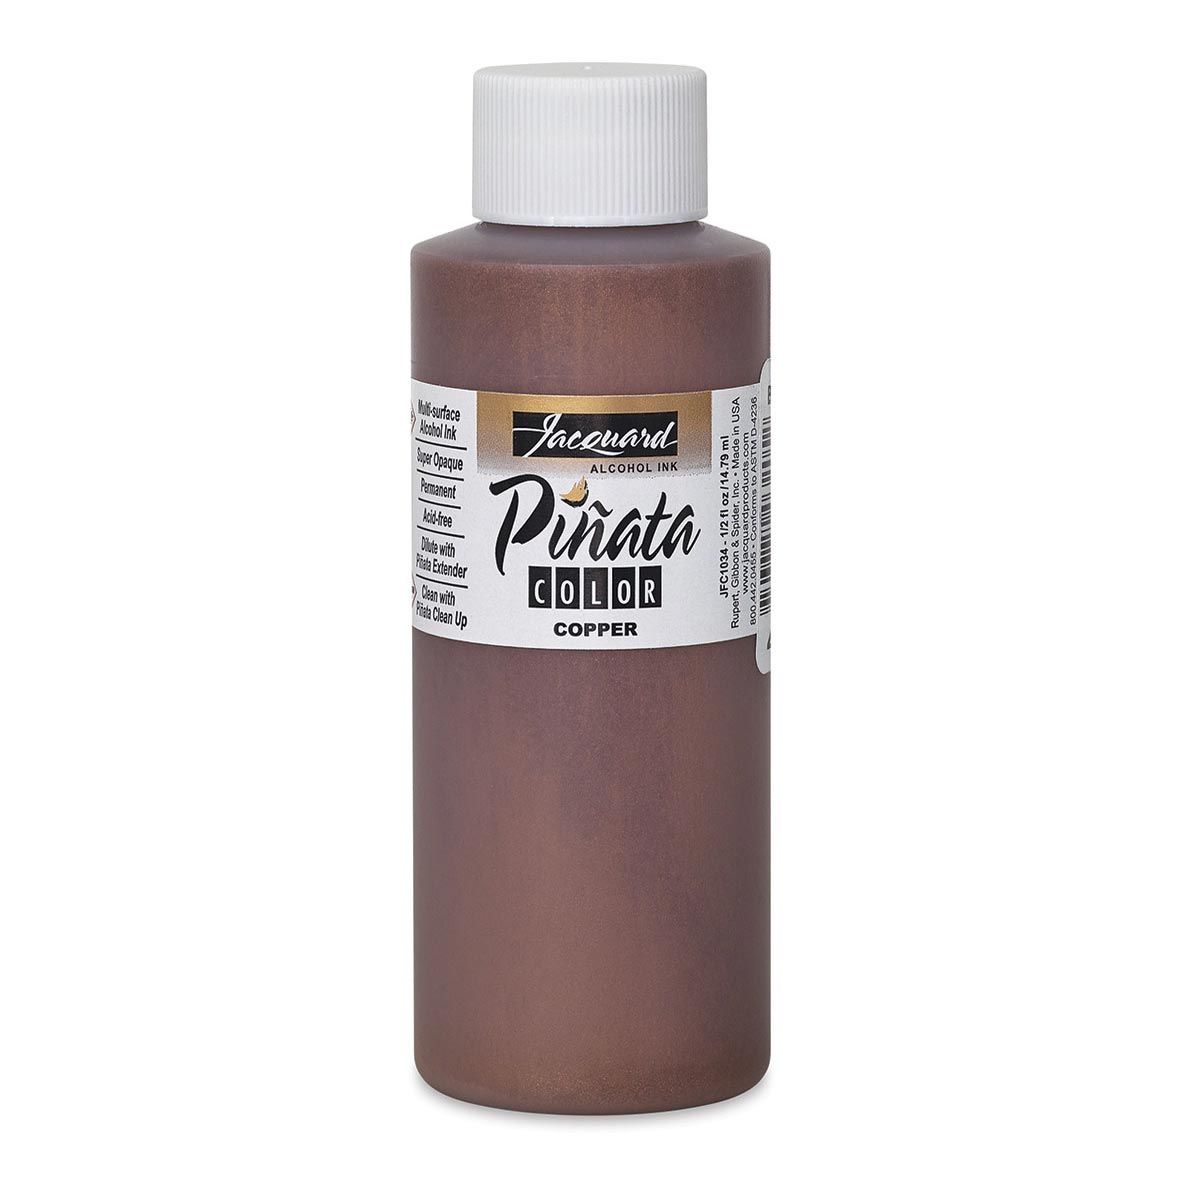 Piñata Color Alcohol Ink - Metallic Copper 4-ounce